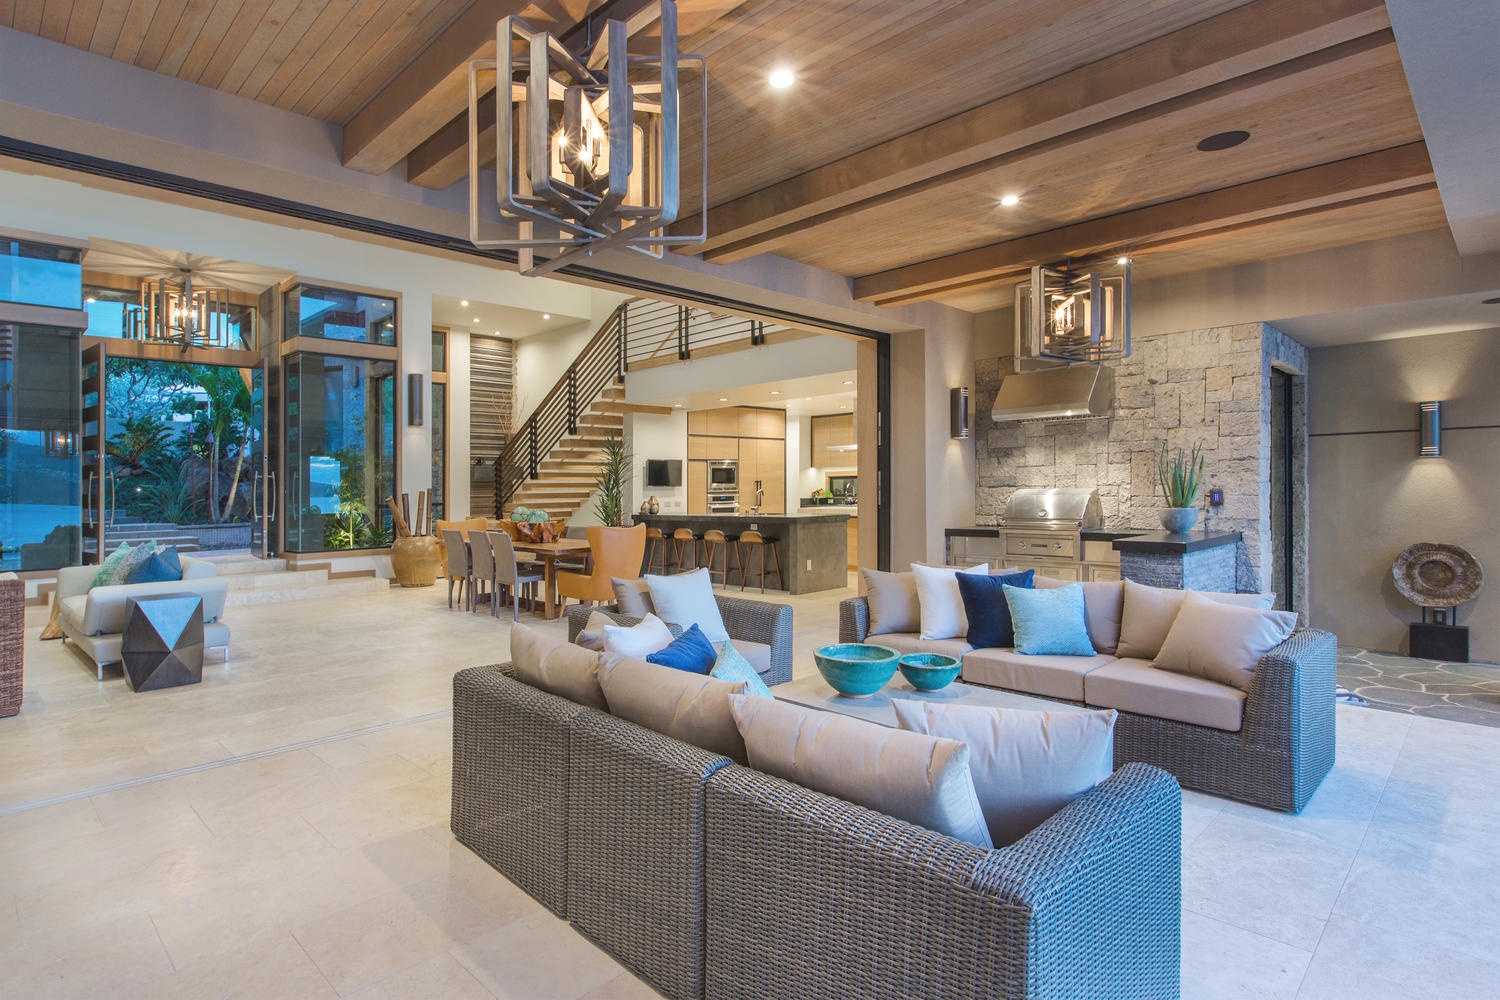 Honolulu Vacation Rentals, Ocean House - Indoor/outdoor living.